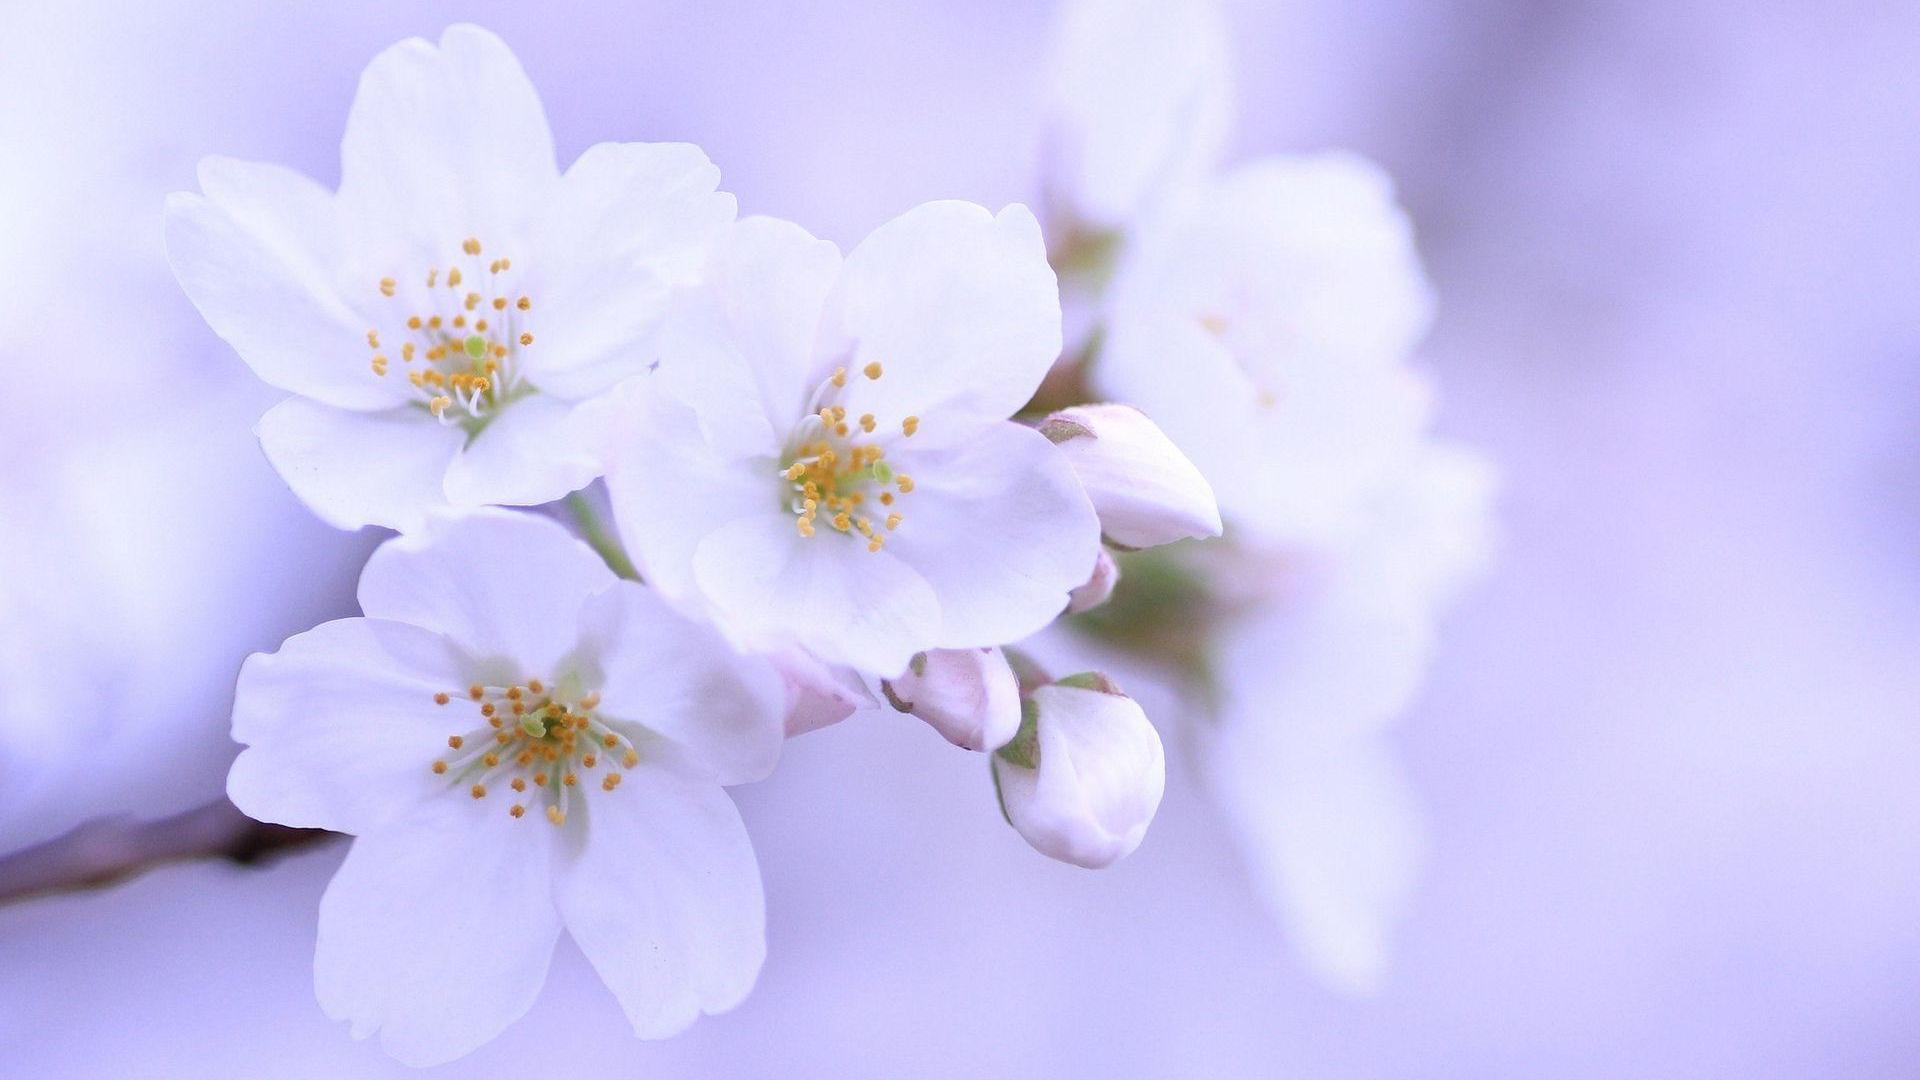 White Cherry Blossom Wallpapers | PixelsTalk.Net